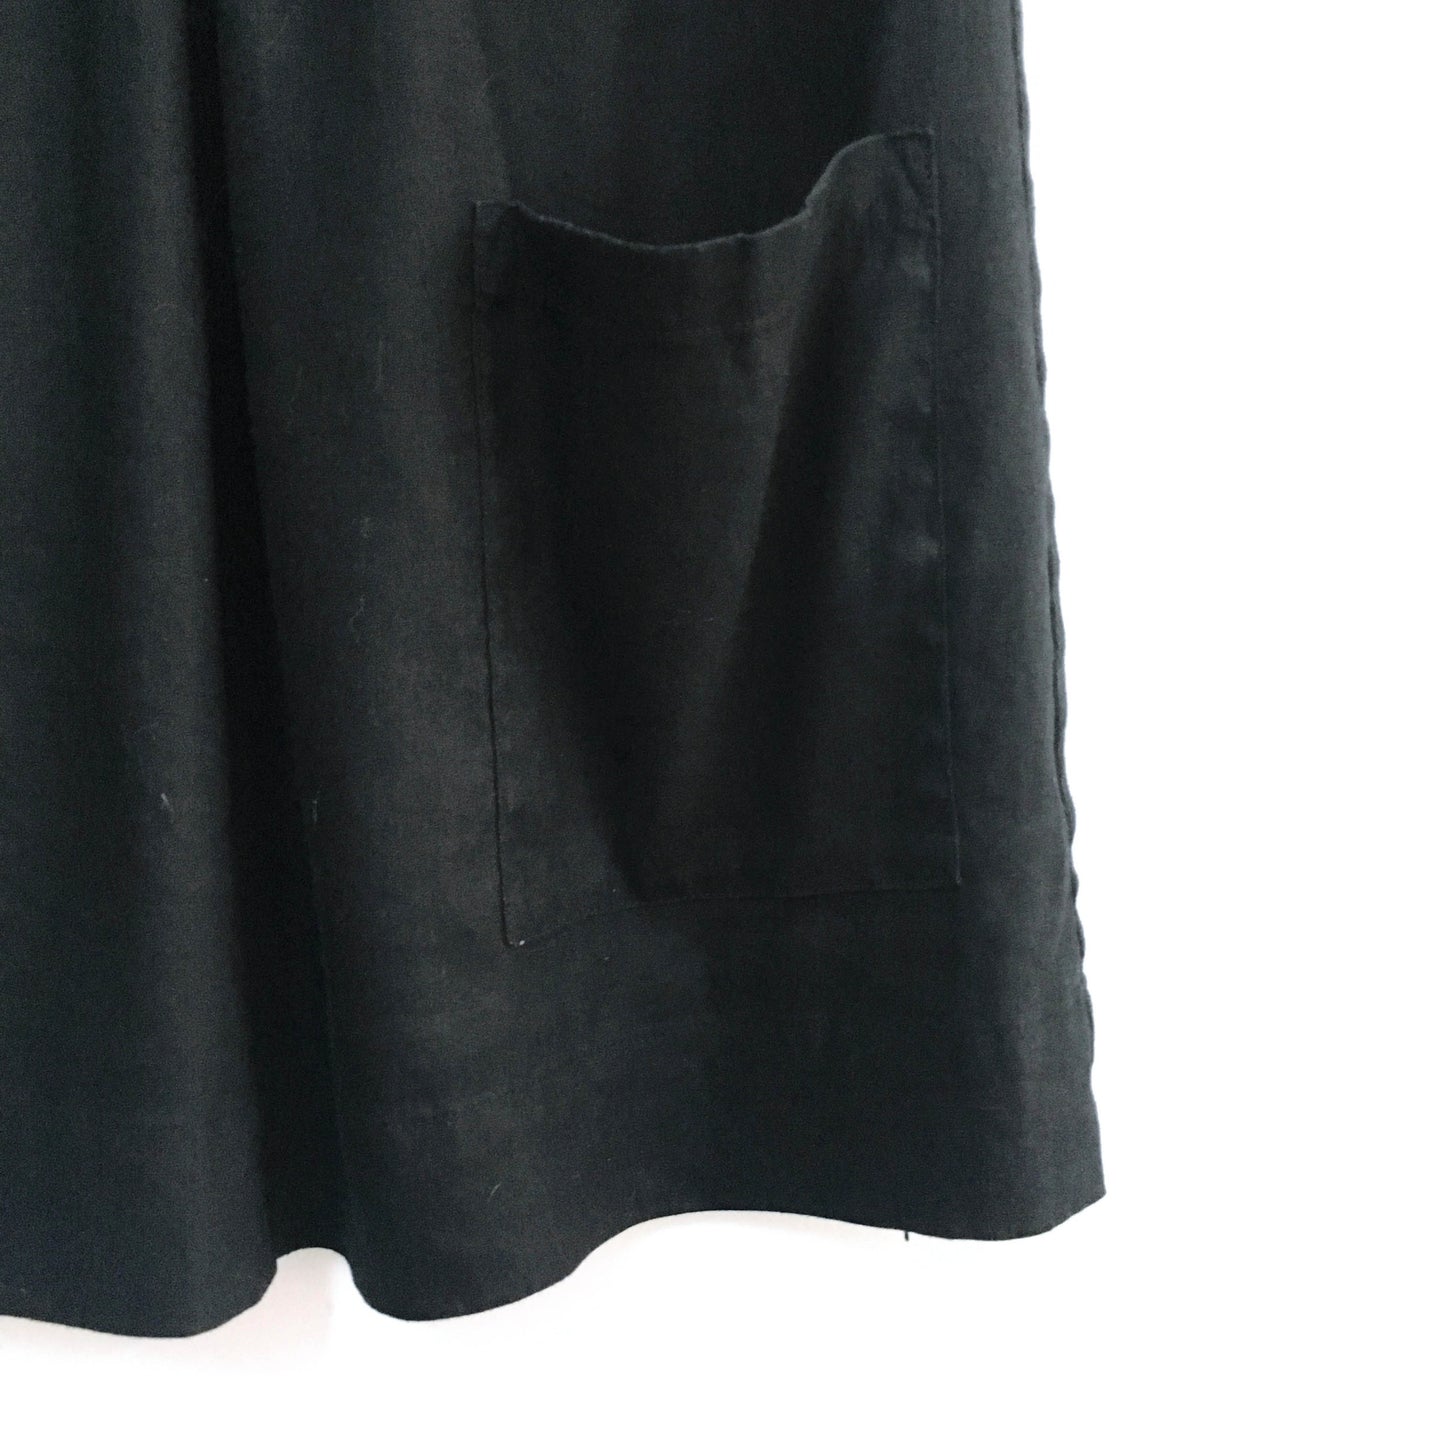 Diane von Furstenberg linen dress - size xs